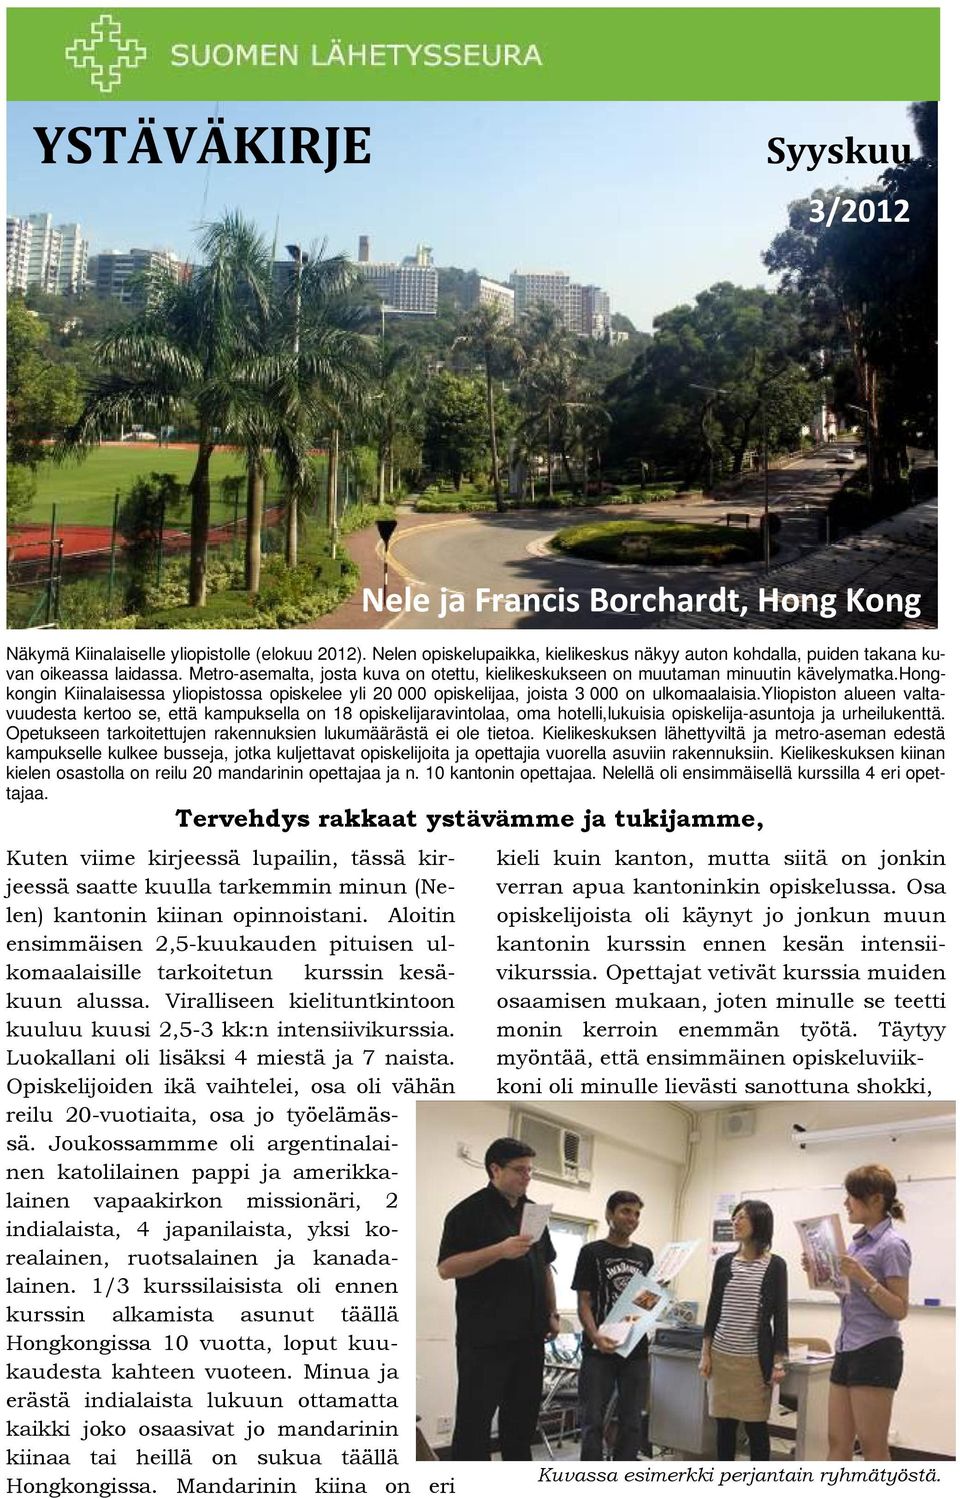 hongkongin Kiinalaisessa yliopistossa opiskelee yli 20 000 opiskelijaa, joista 3 000 on ulkomaalaisia.